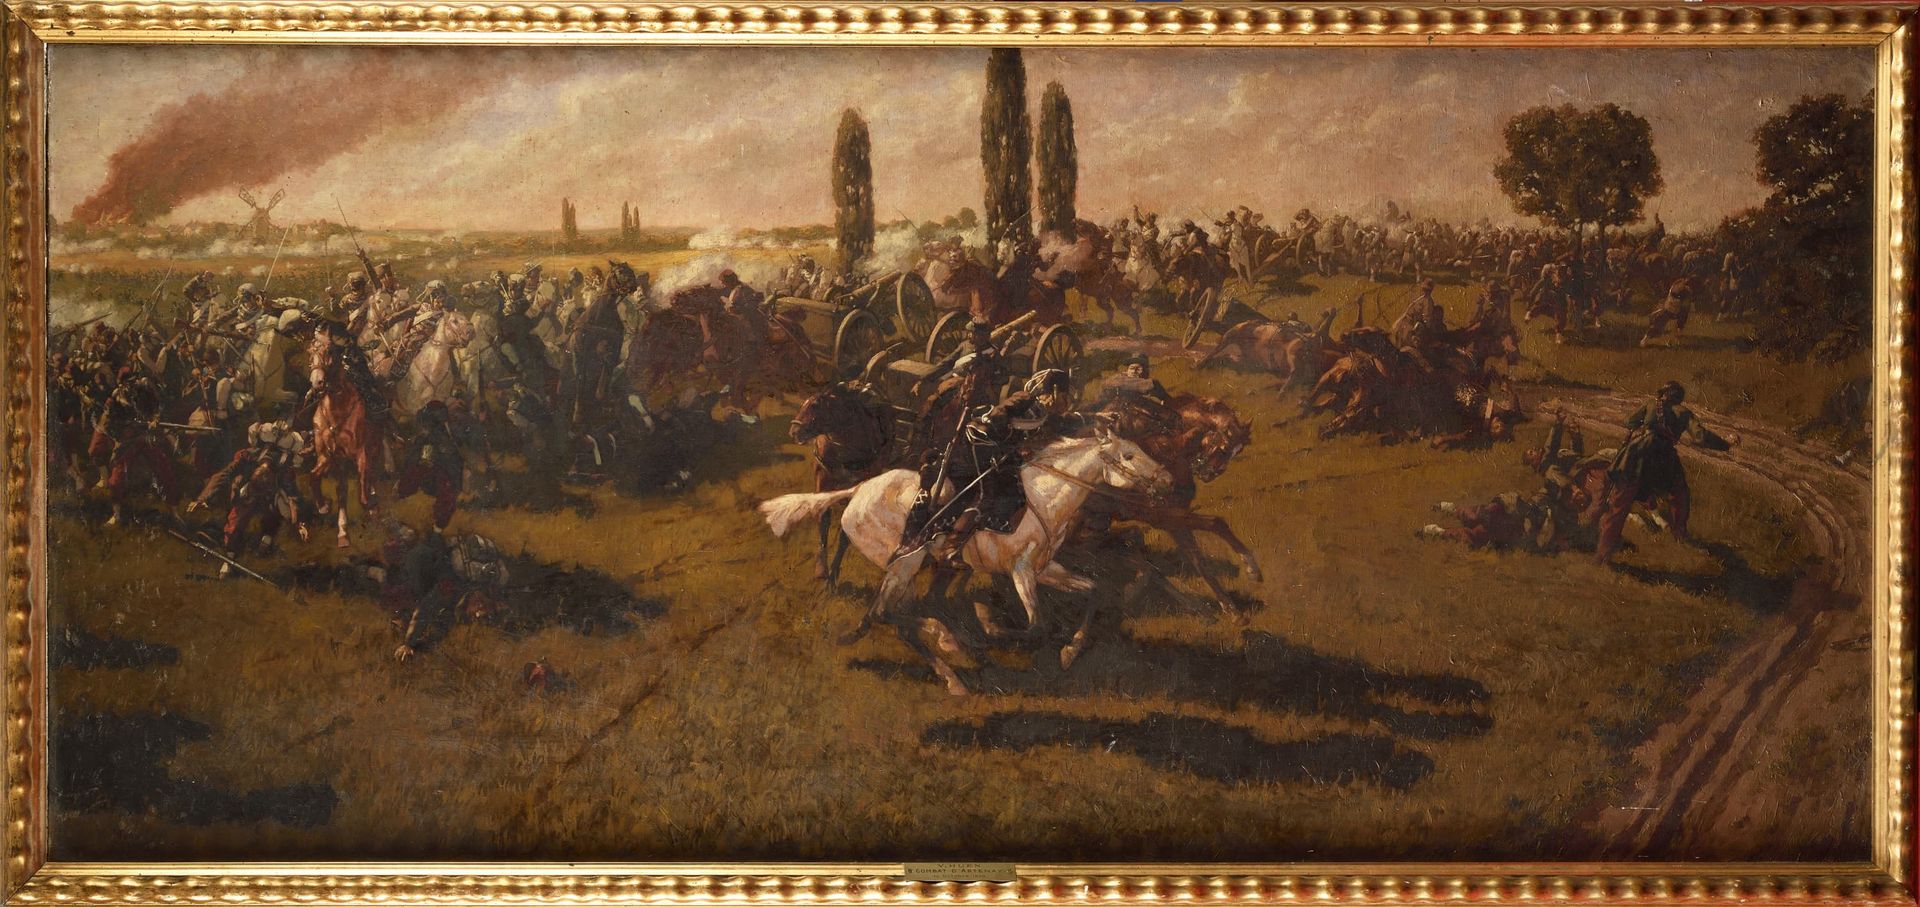 Null 维克托-胡恩(1874-1939)
19世纪末的法国画派。 
"1870年10月10日，阿特奈战役期间，乌兰人对法国炮兵的冲锋。 
全景画布上的大型油&hellip;